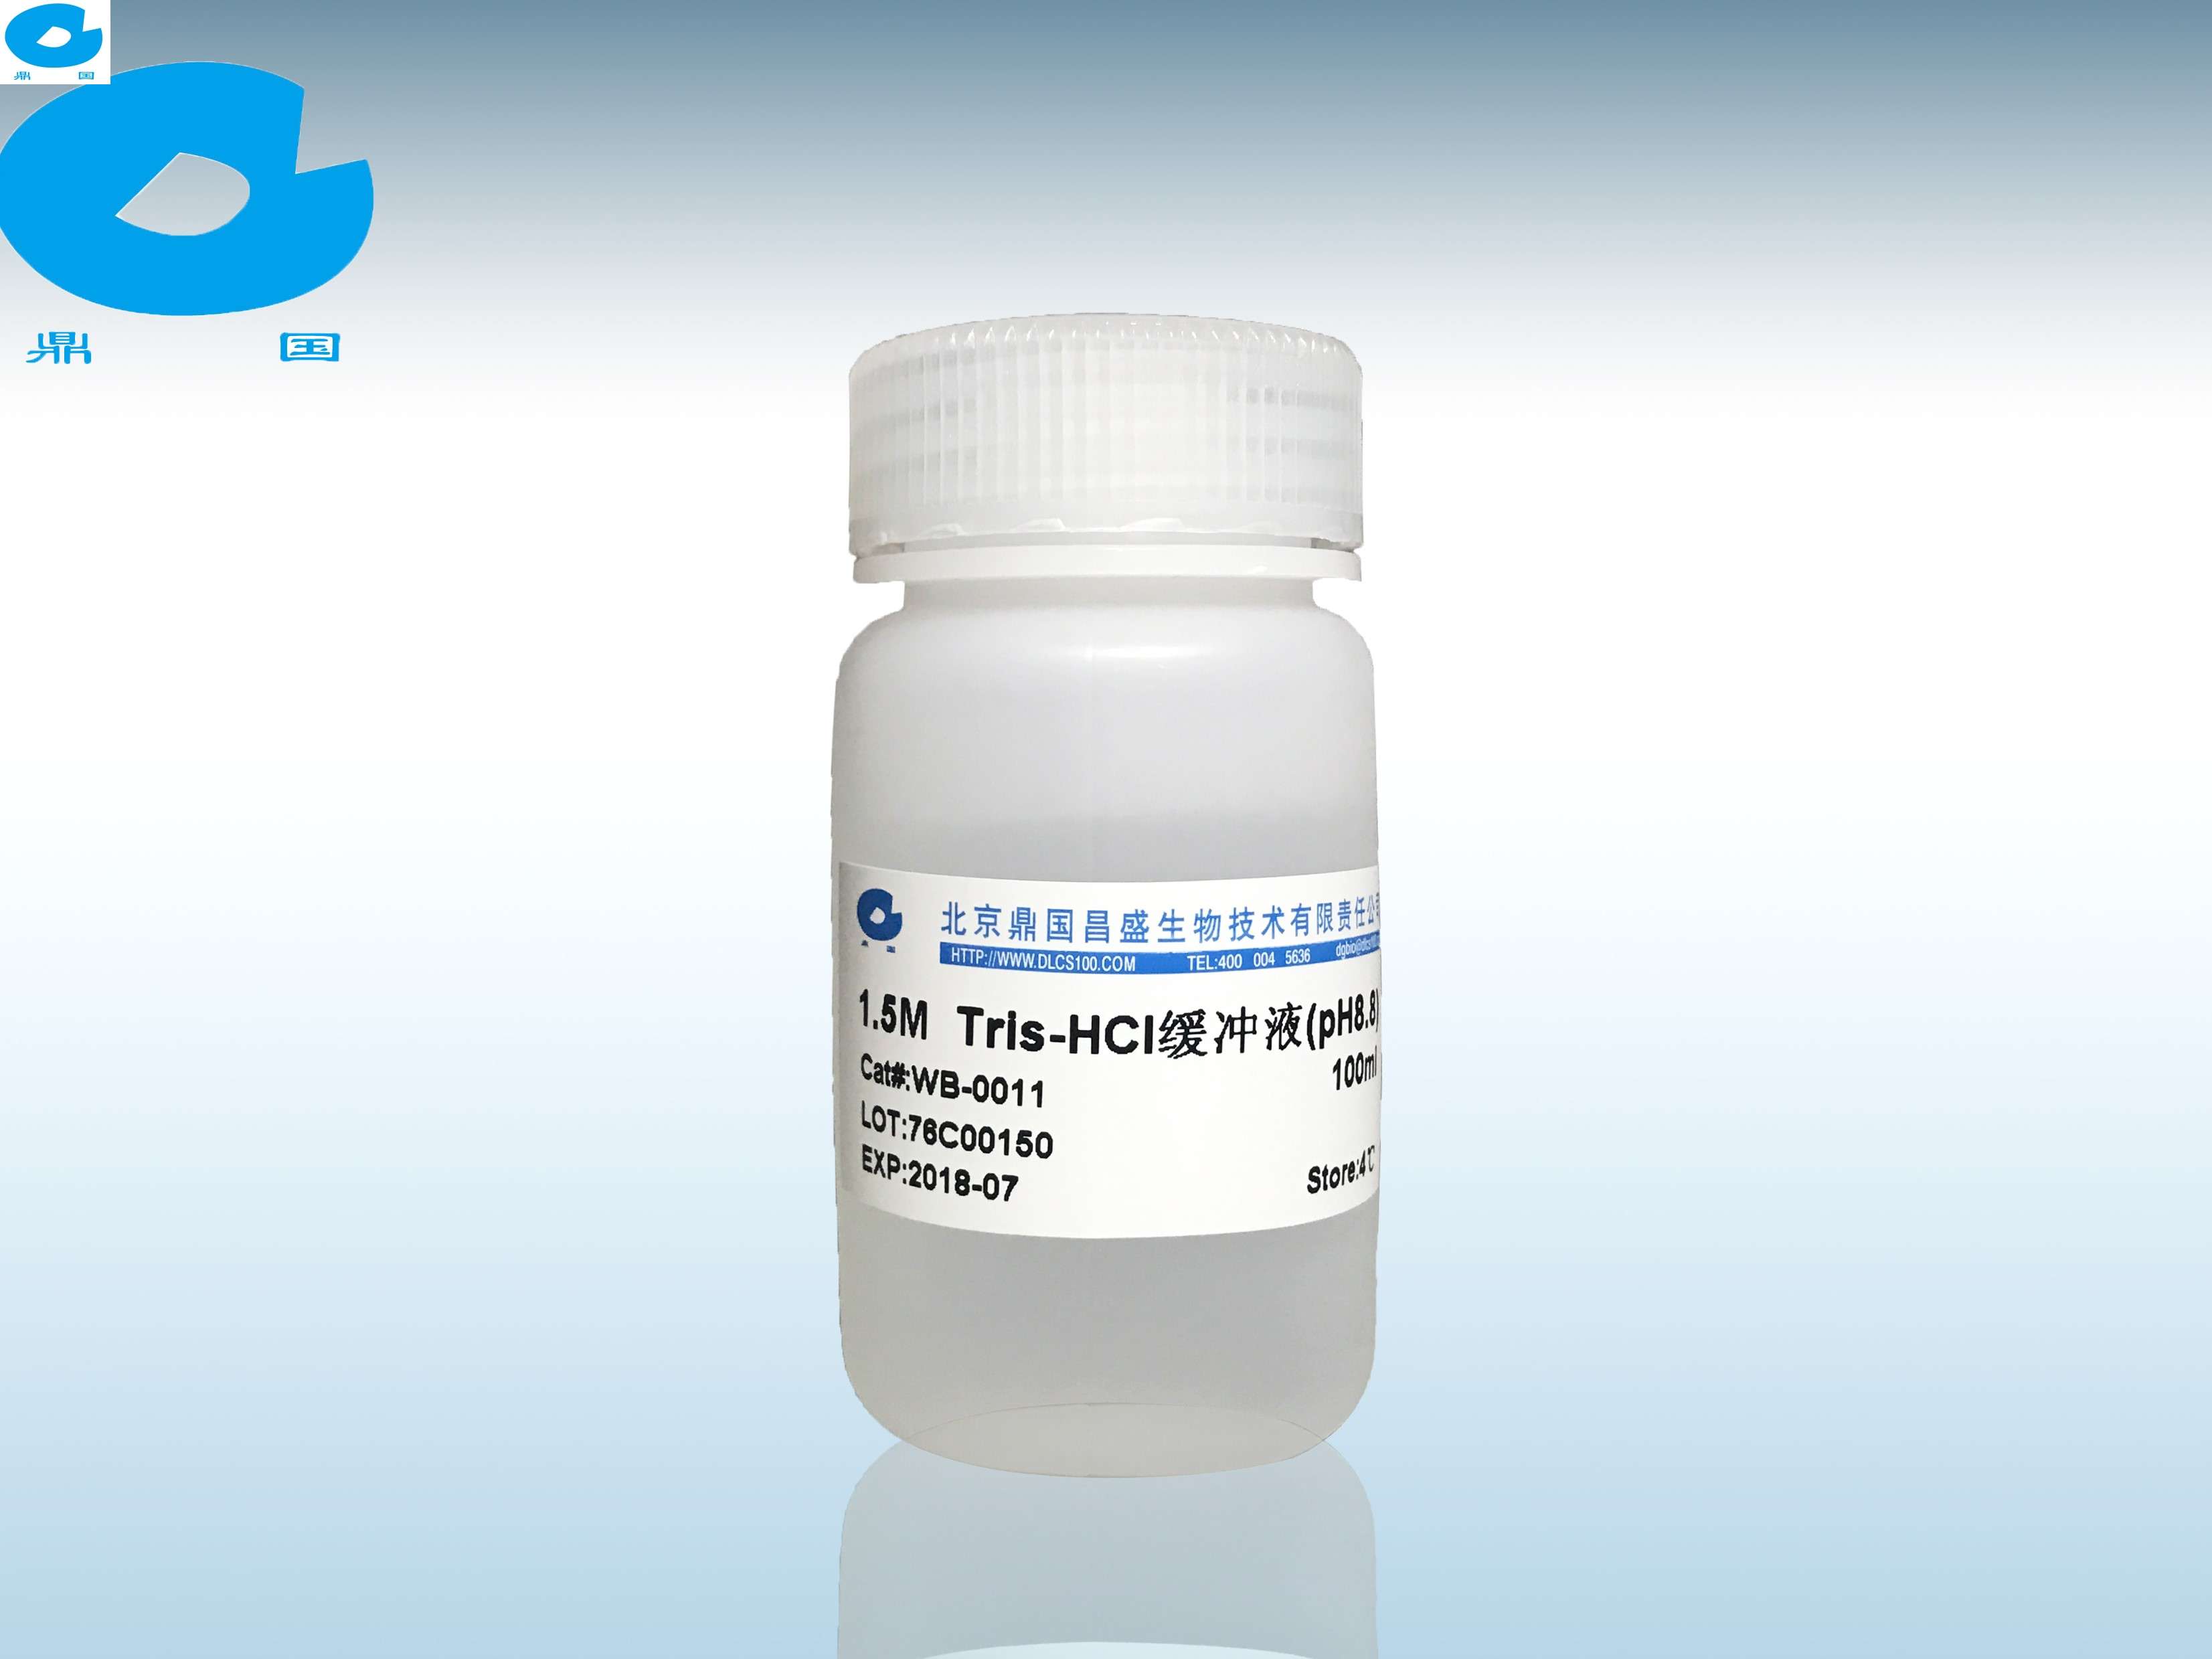 1.5M Tris-HCl pH8.8